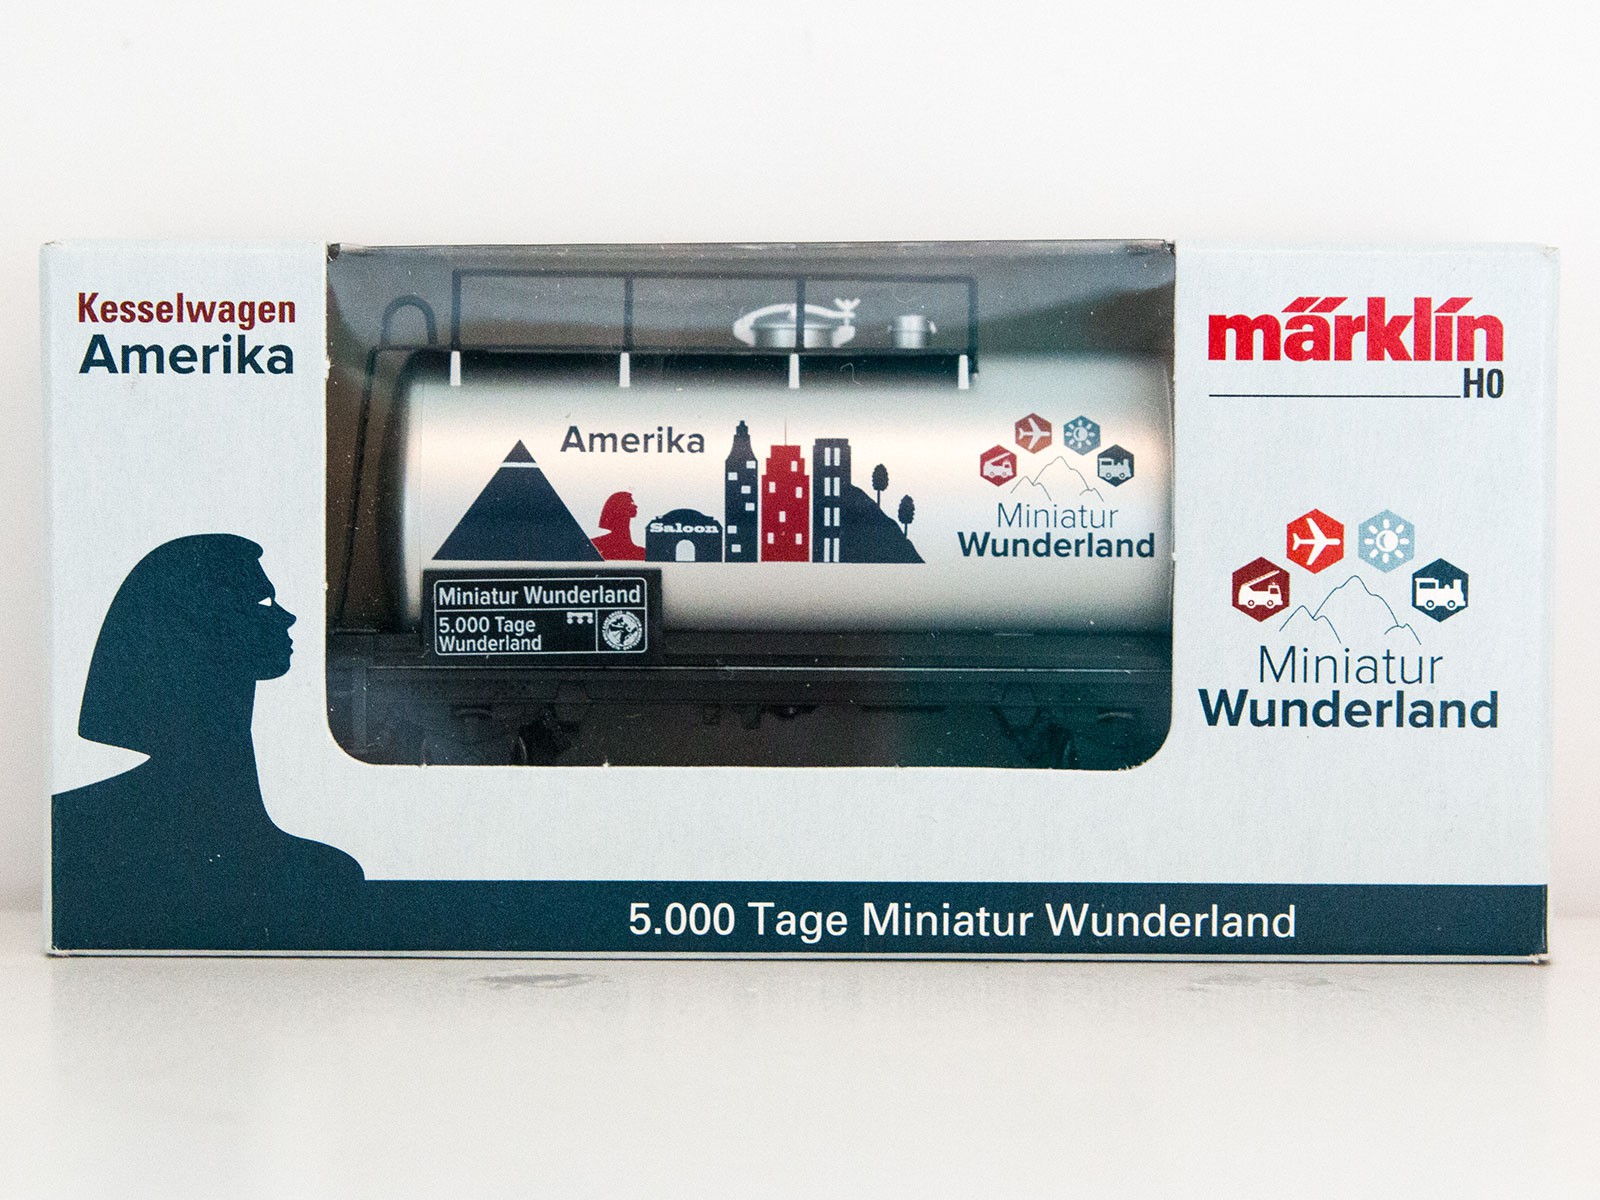 Special Edition H0 Märklin 2015 tankwagon "5000 Tage Wunderland - Amerika"